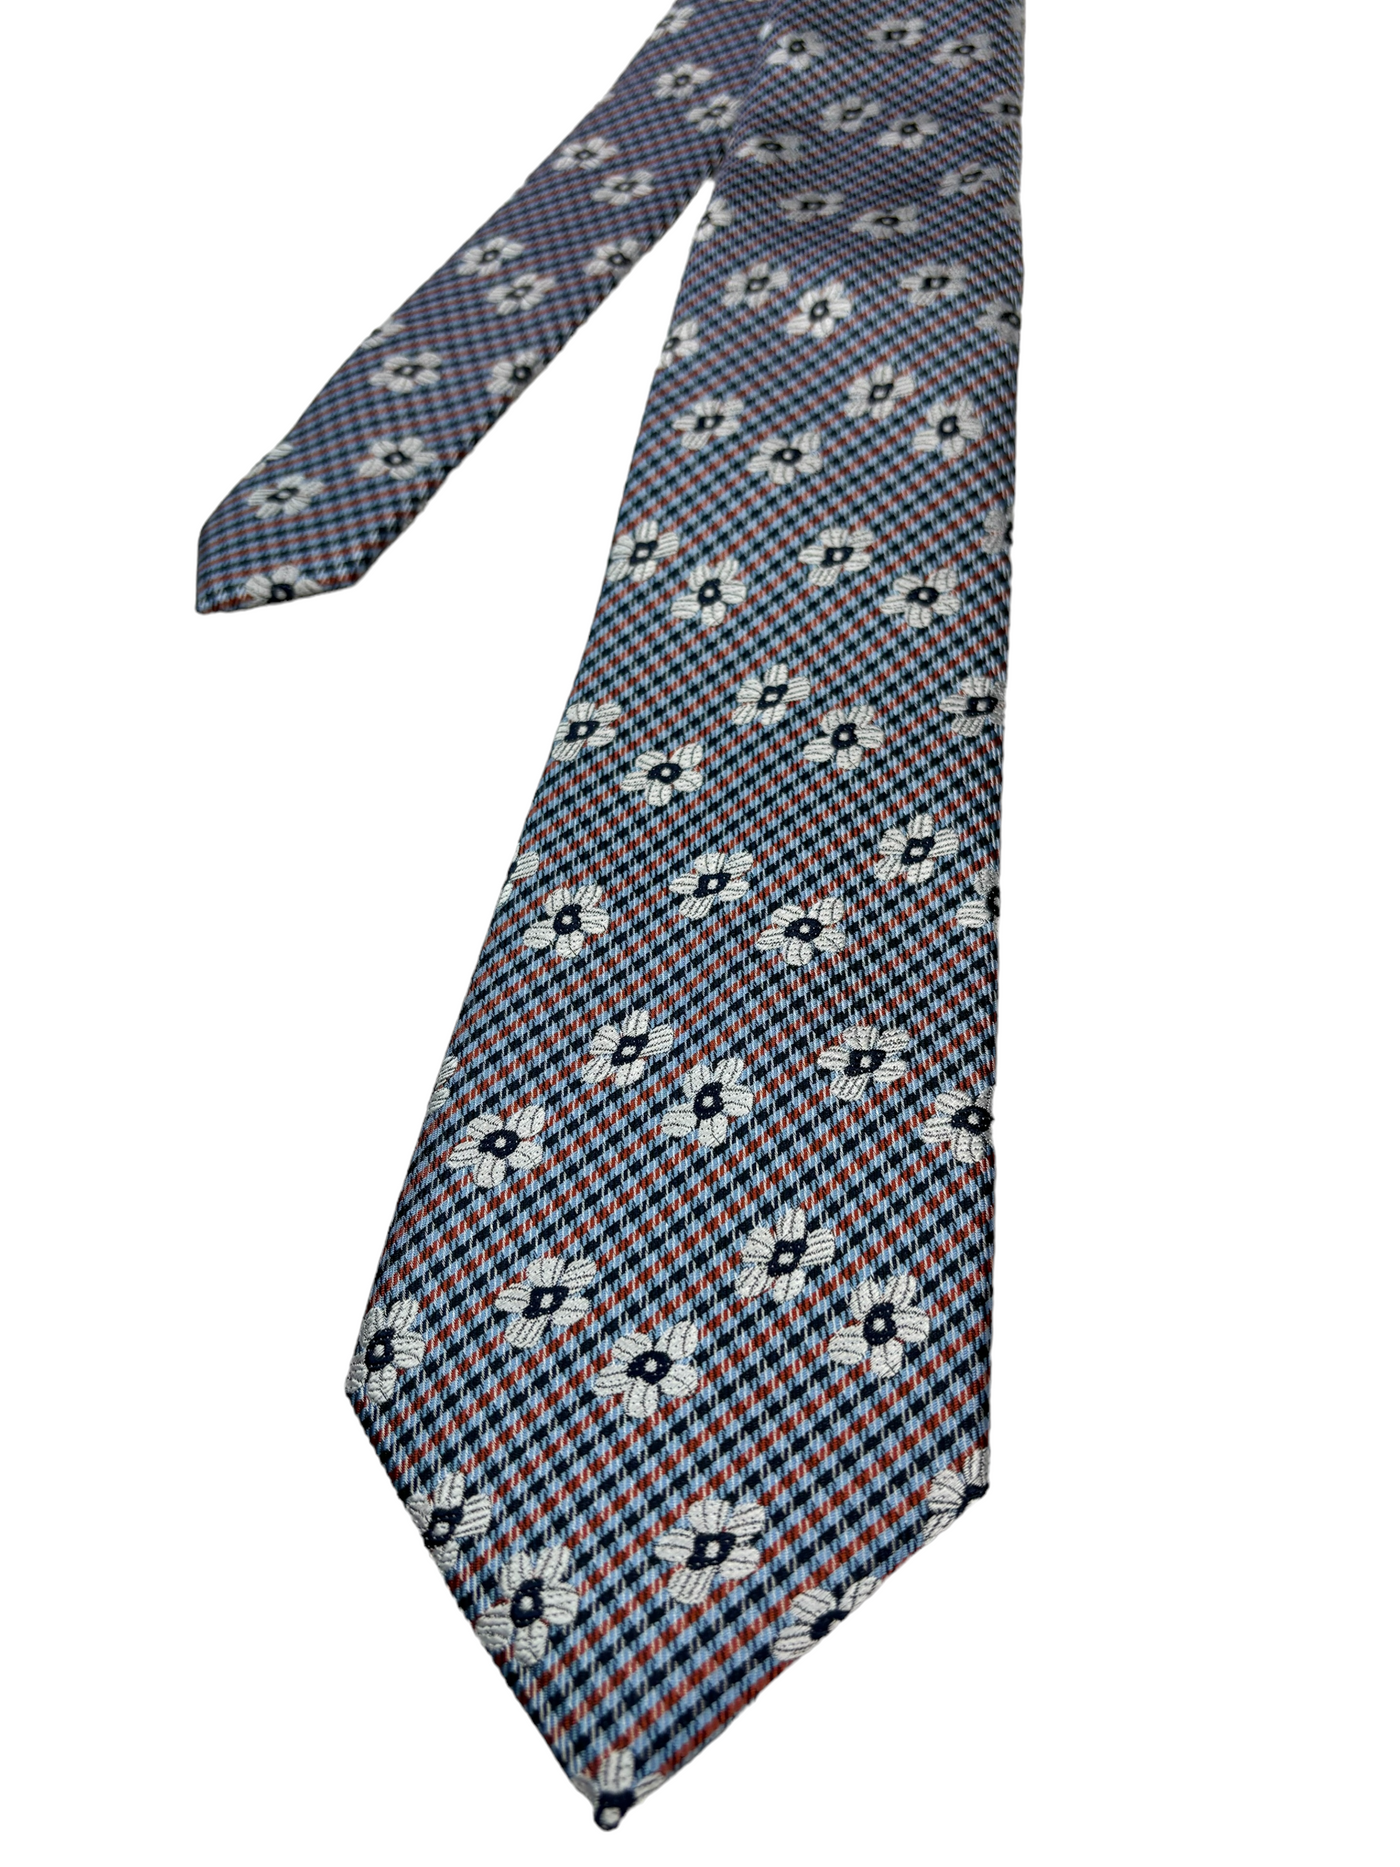 Cravate bleue à motif floral